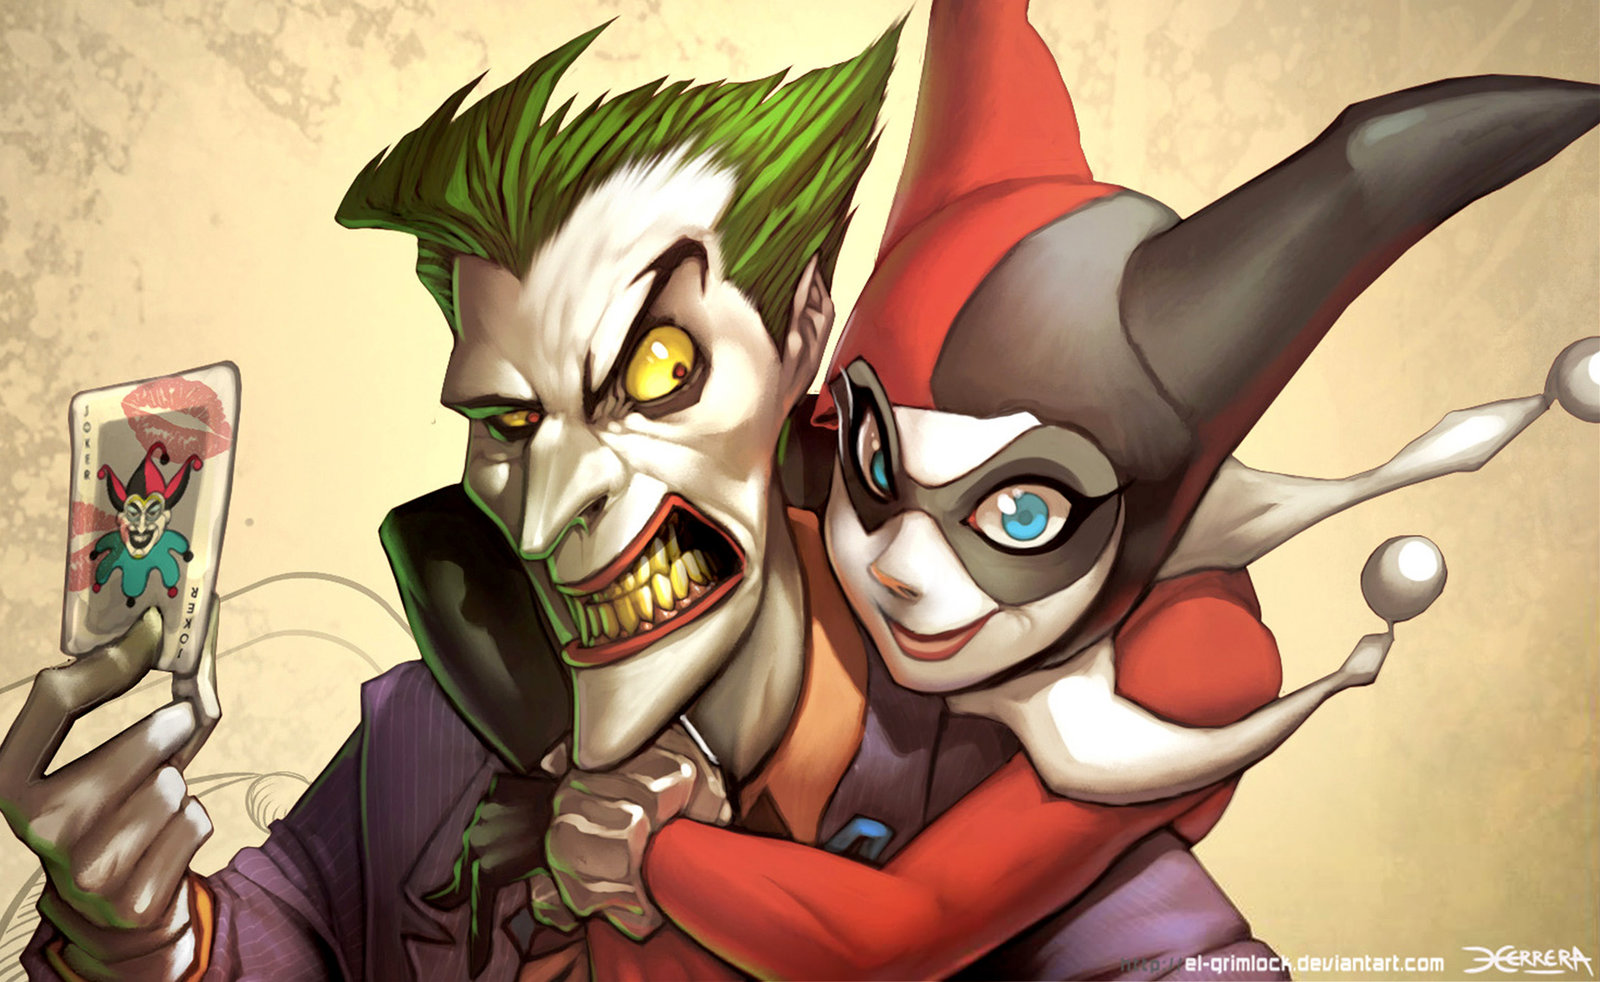 49+] Joker and Harley Wallpaper - WallpaperSafari